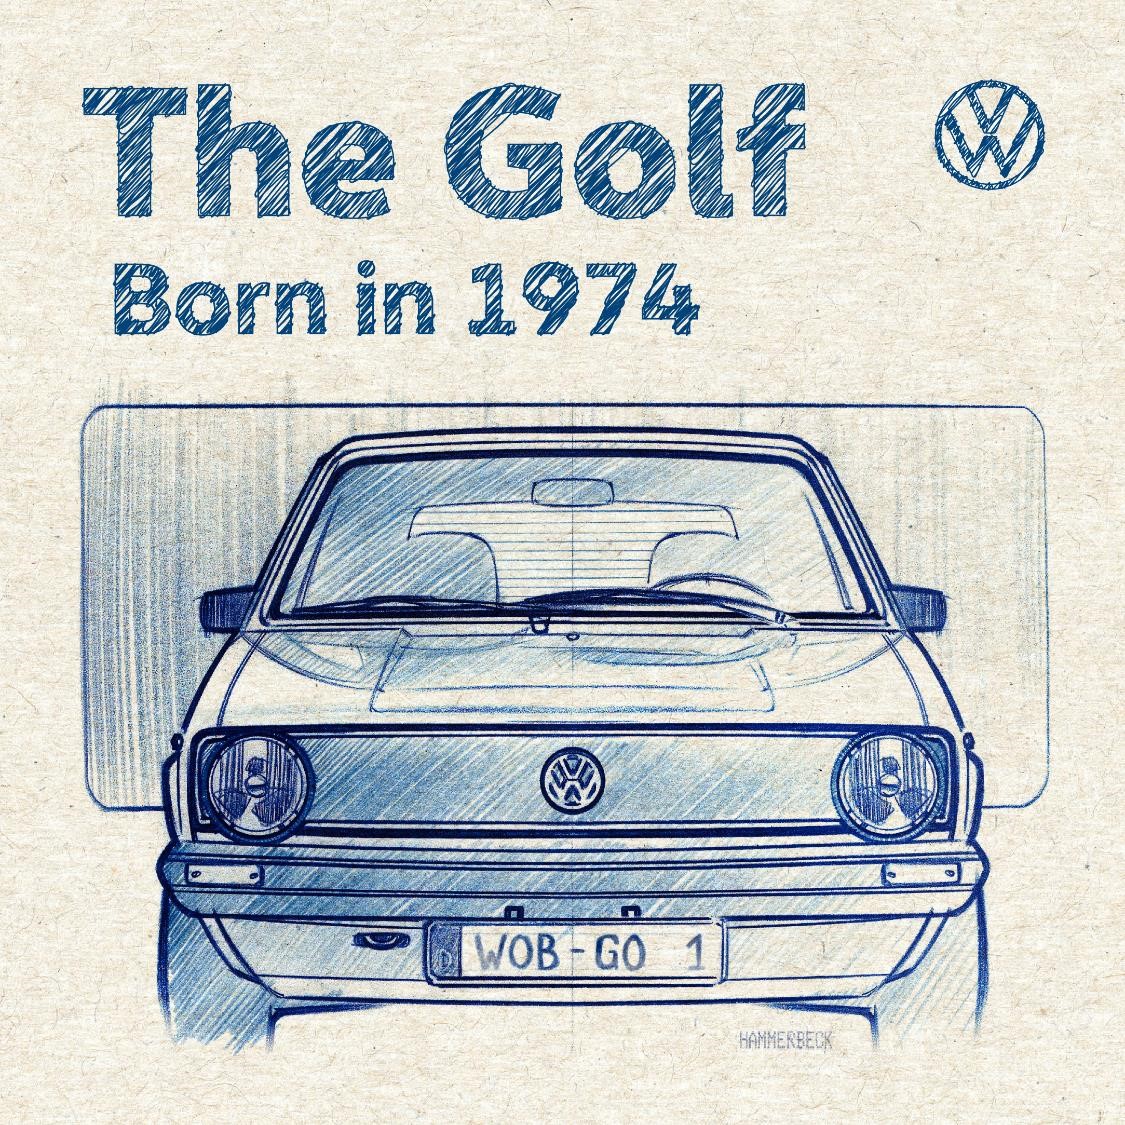 全球3,700萬車主祝The Golf 50歲生日快樂 台灣福斯汽車「The Golf 50 週年 – 跨時空海報」活動開跑